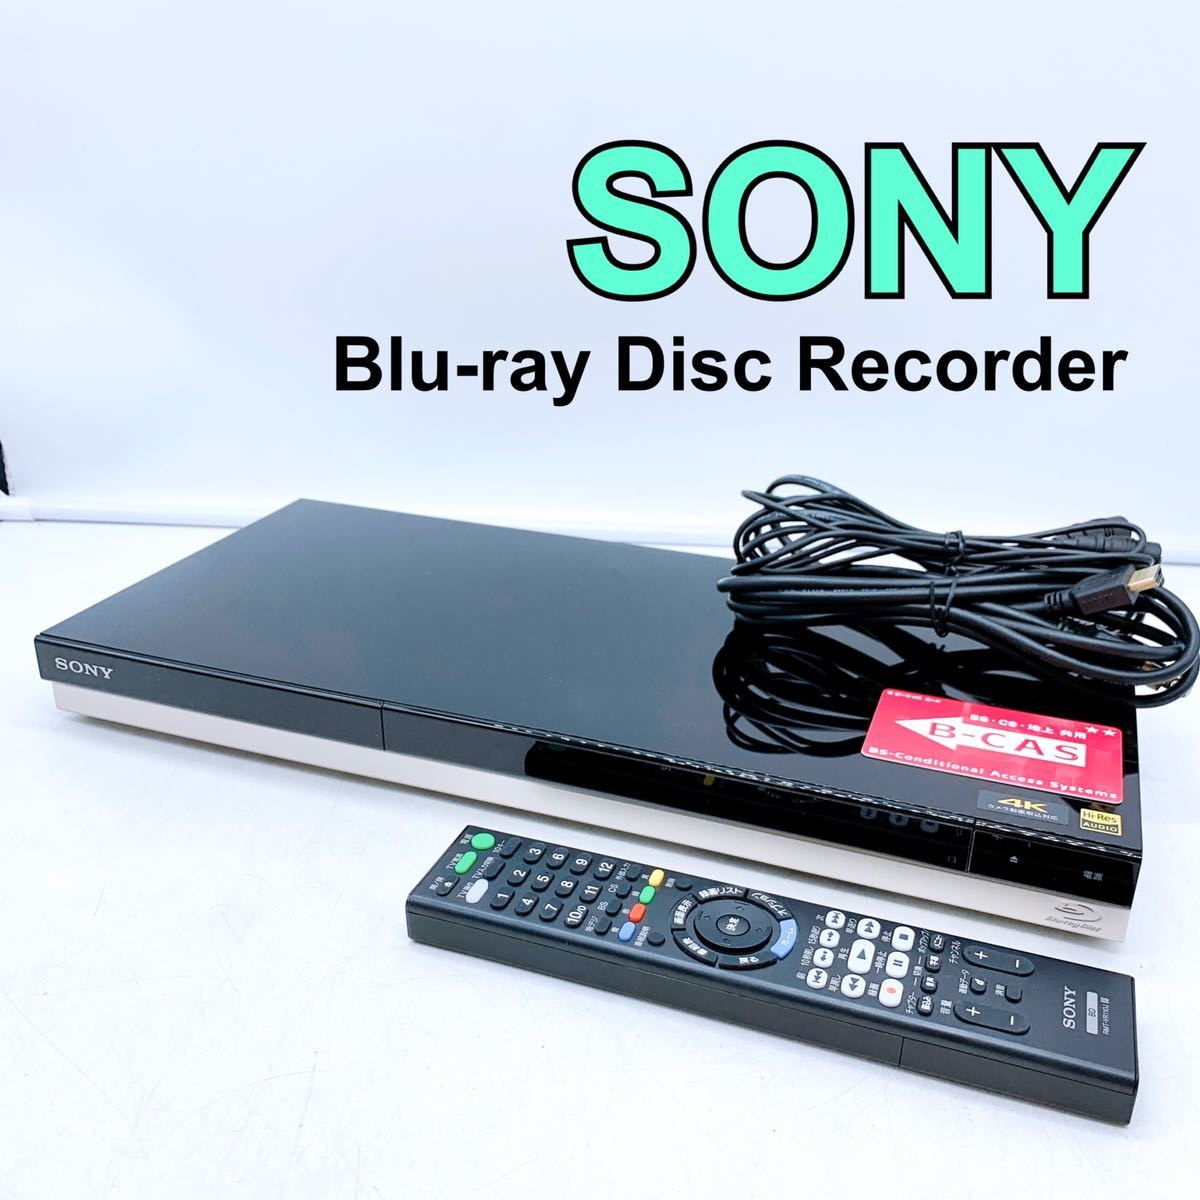 直送商品 SONY BDZ-AX1000 2TB ソニー ブルーレイレコーダー 家電